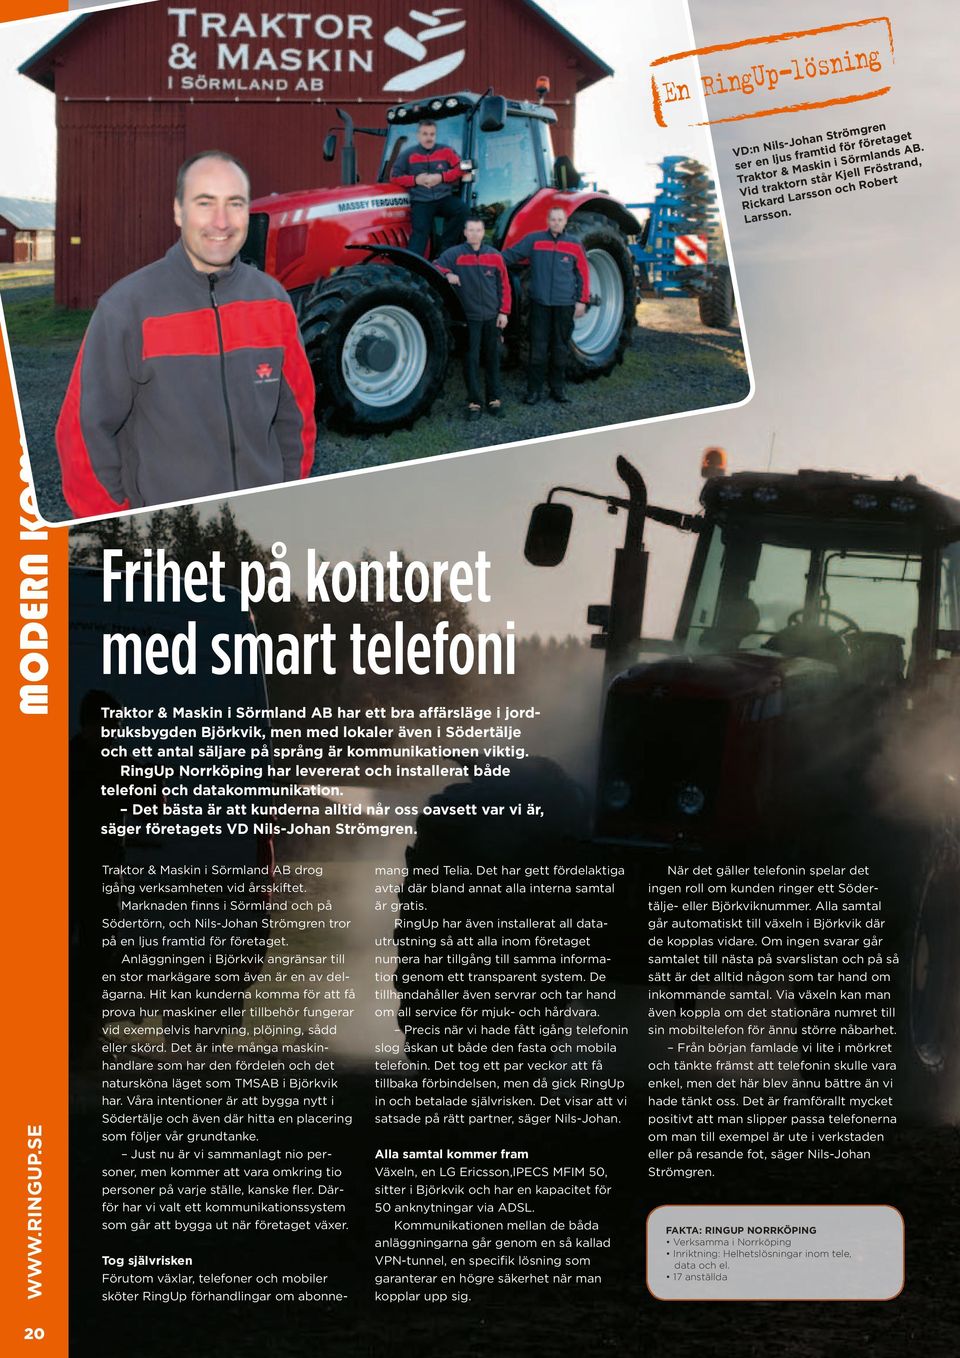 Larsso Frihet på kontoret med smart telefoni Traktor & Maskin i Sörmland AB har ett bra affärsläge i jordbruksbygden Björkvik, men med lokaler även i Södertälje och ett antal säljare på språng är